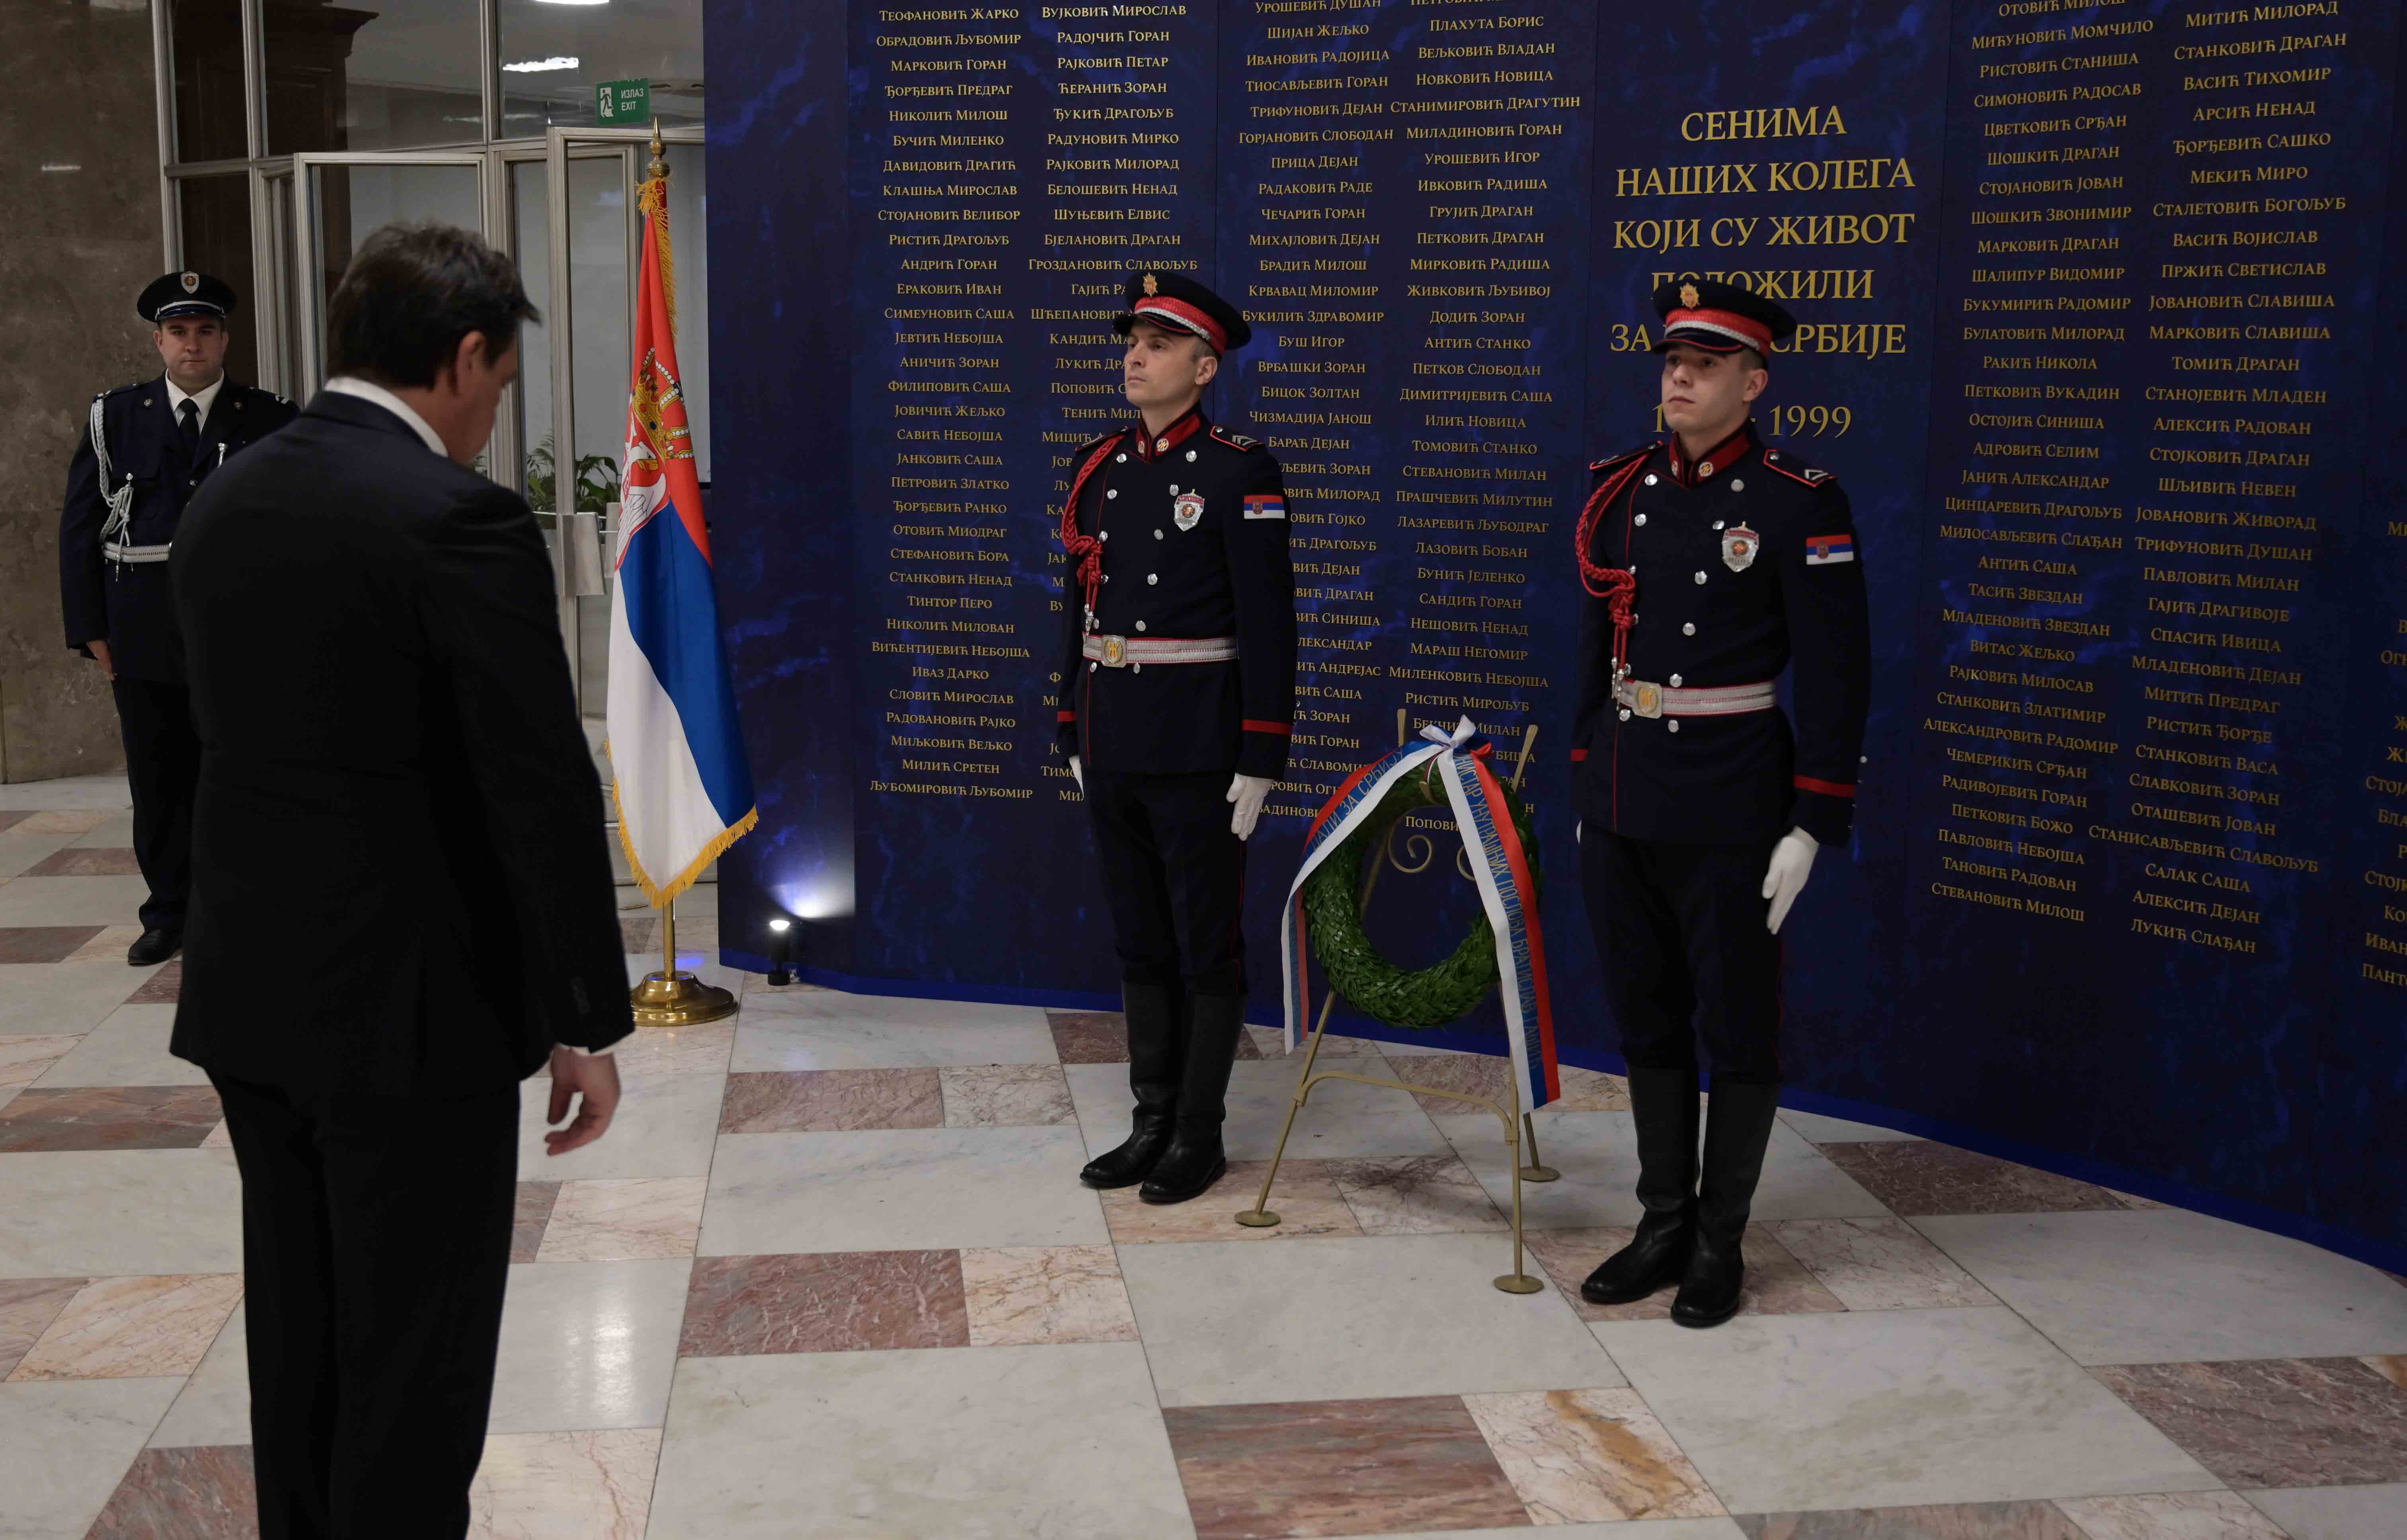 Sećanje na sve policijske službenike koji su žrtvovali svoje živote vršeći službenu dužnost zarad mira i bezbednosti Republike Srbije